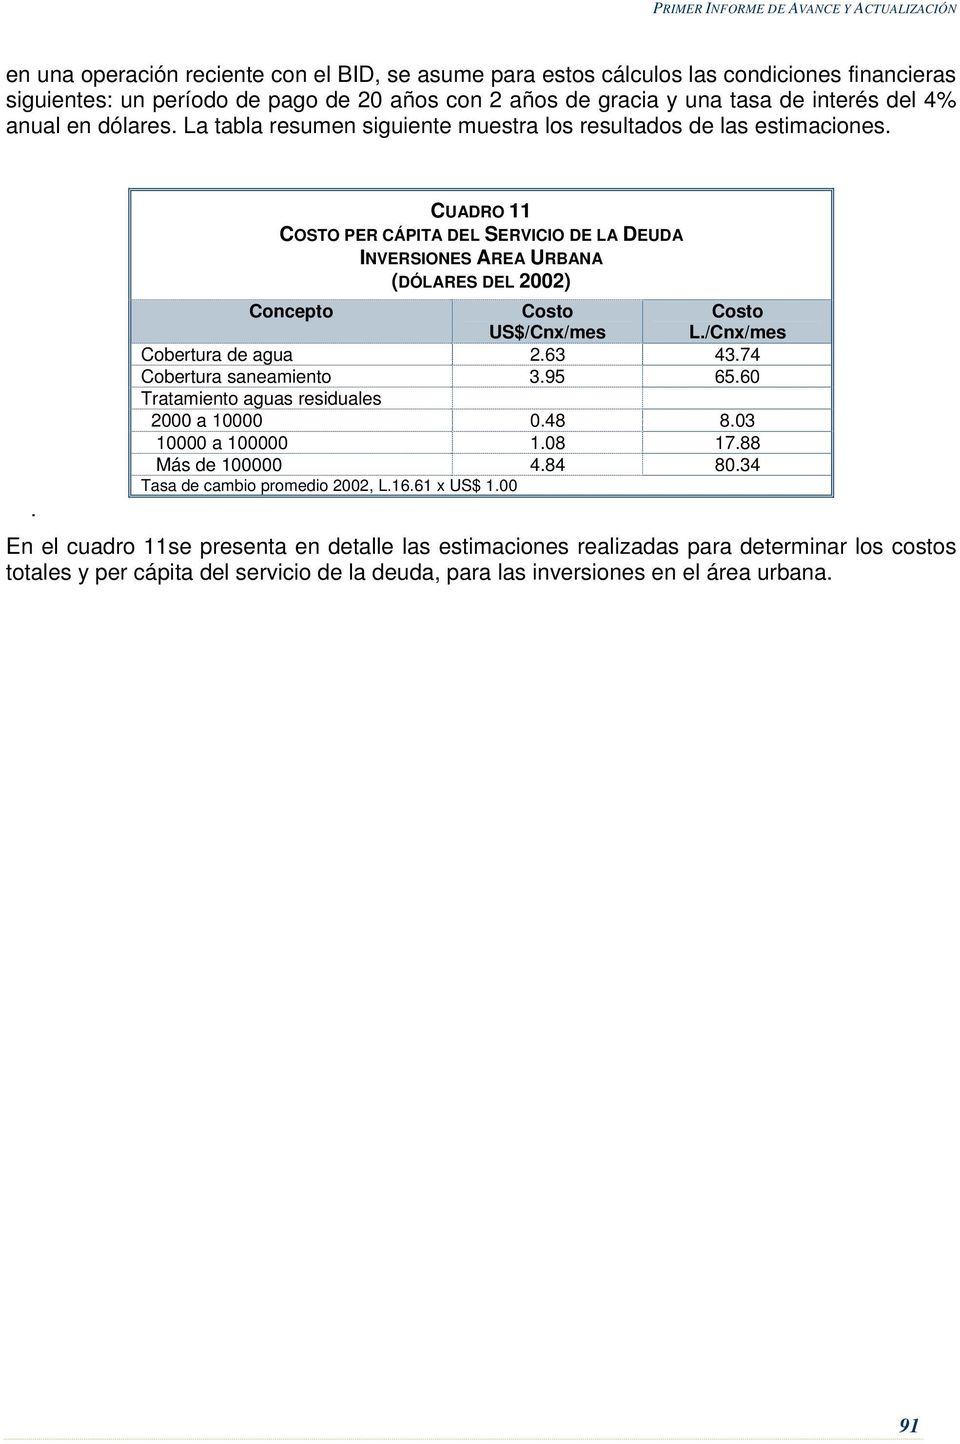 . CUADRO 11 COSTO PER CÁPITA DEL SERVICIO DE LA DEUDA INVERSIONES AREA URBANA (DÓLARES DEL 2002) Concepto Costo /Cnx/mes Costo L./Cnx/mes de agua 2.63 43.74 saneamiento 3.95 65.